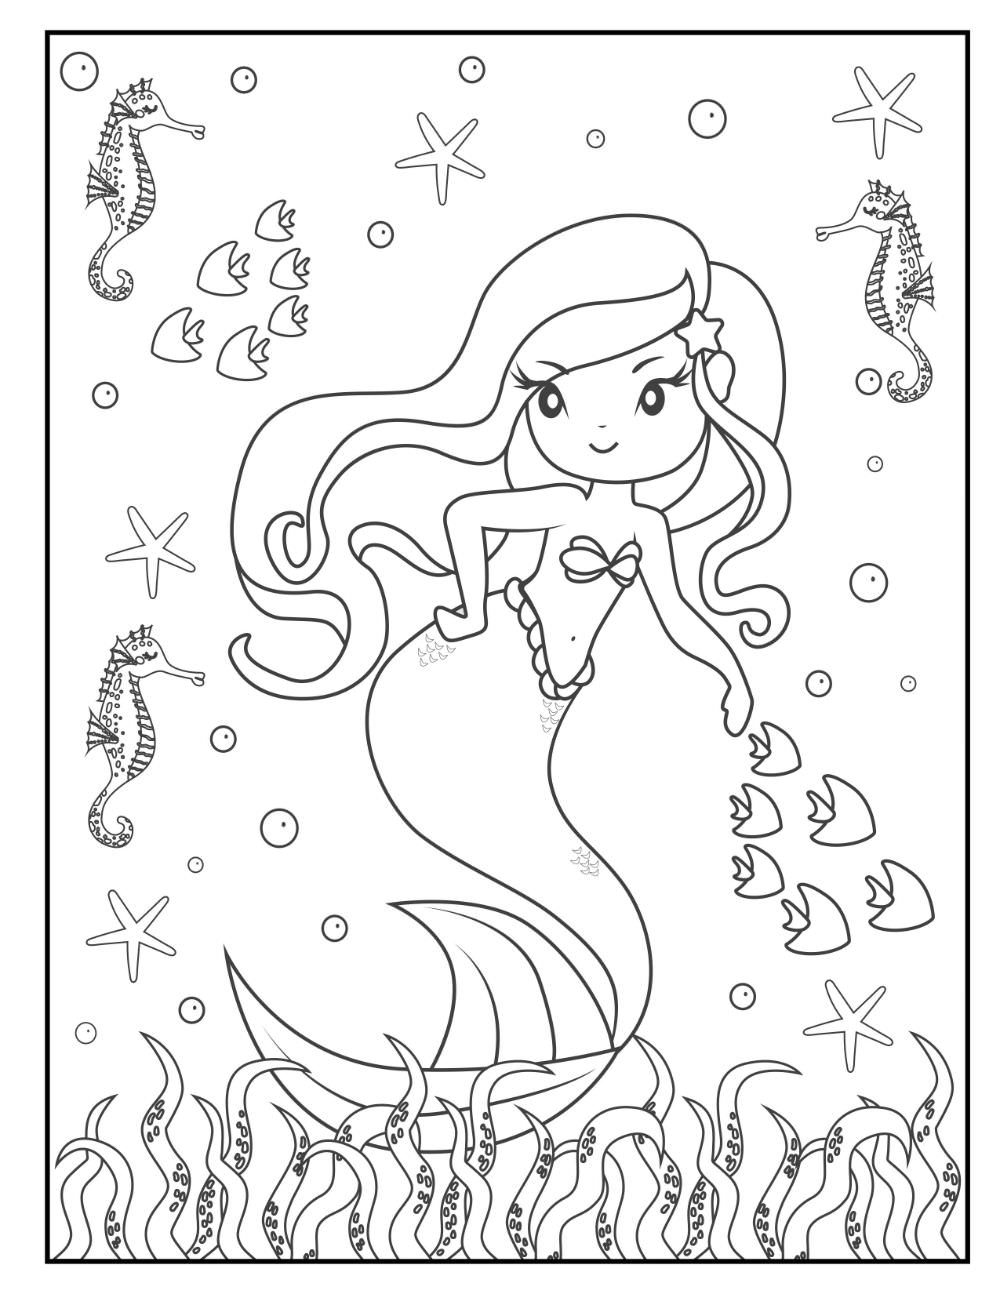 Printable kid mermaid Coloring Page for kids.